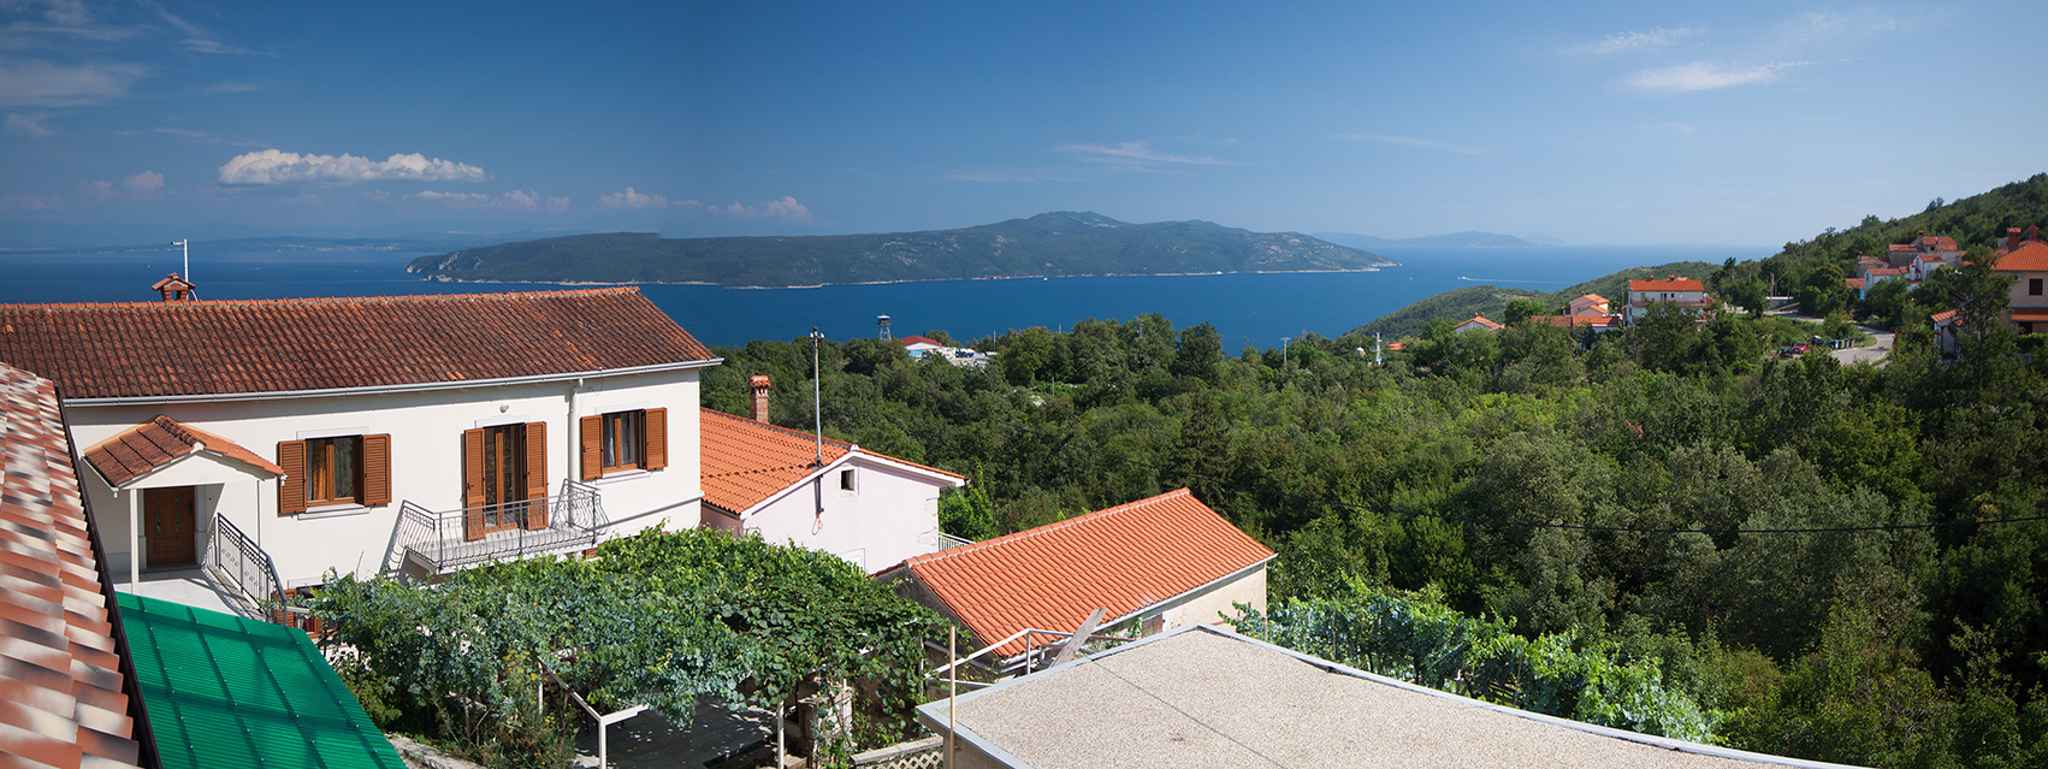 Ferienhaus mit Blick auf das Meer Ferienhaus in Kroatien